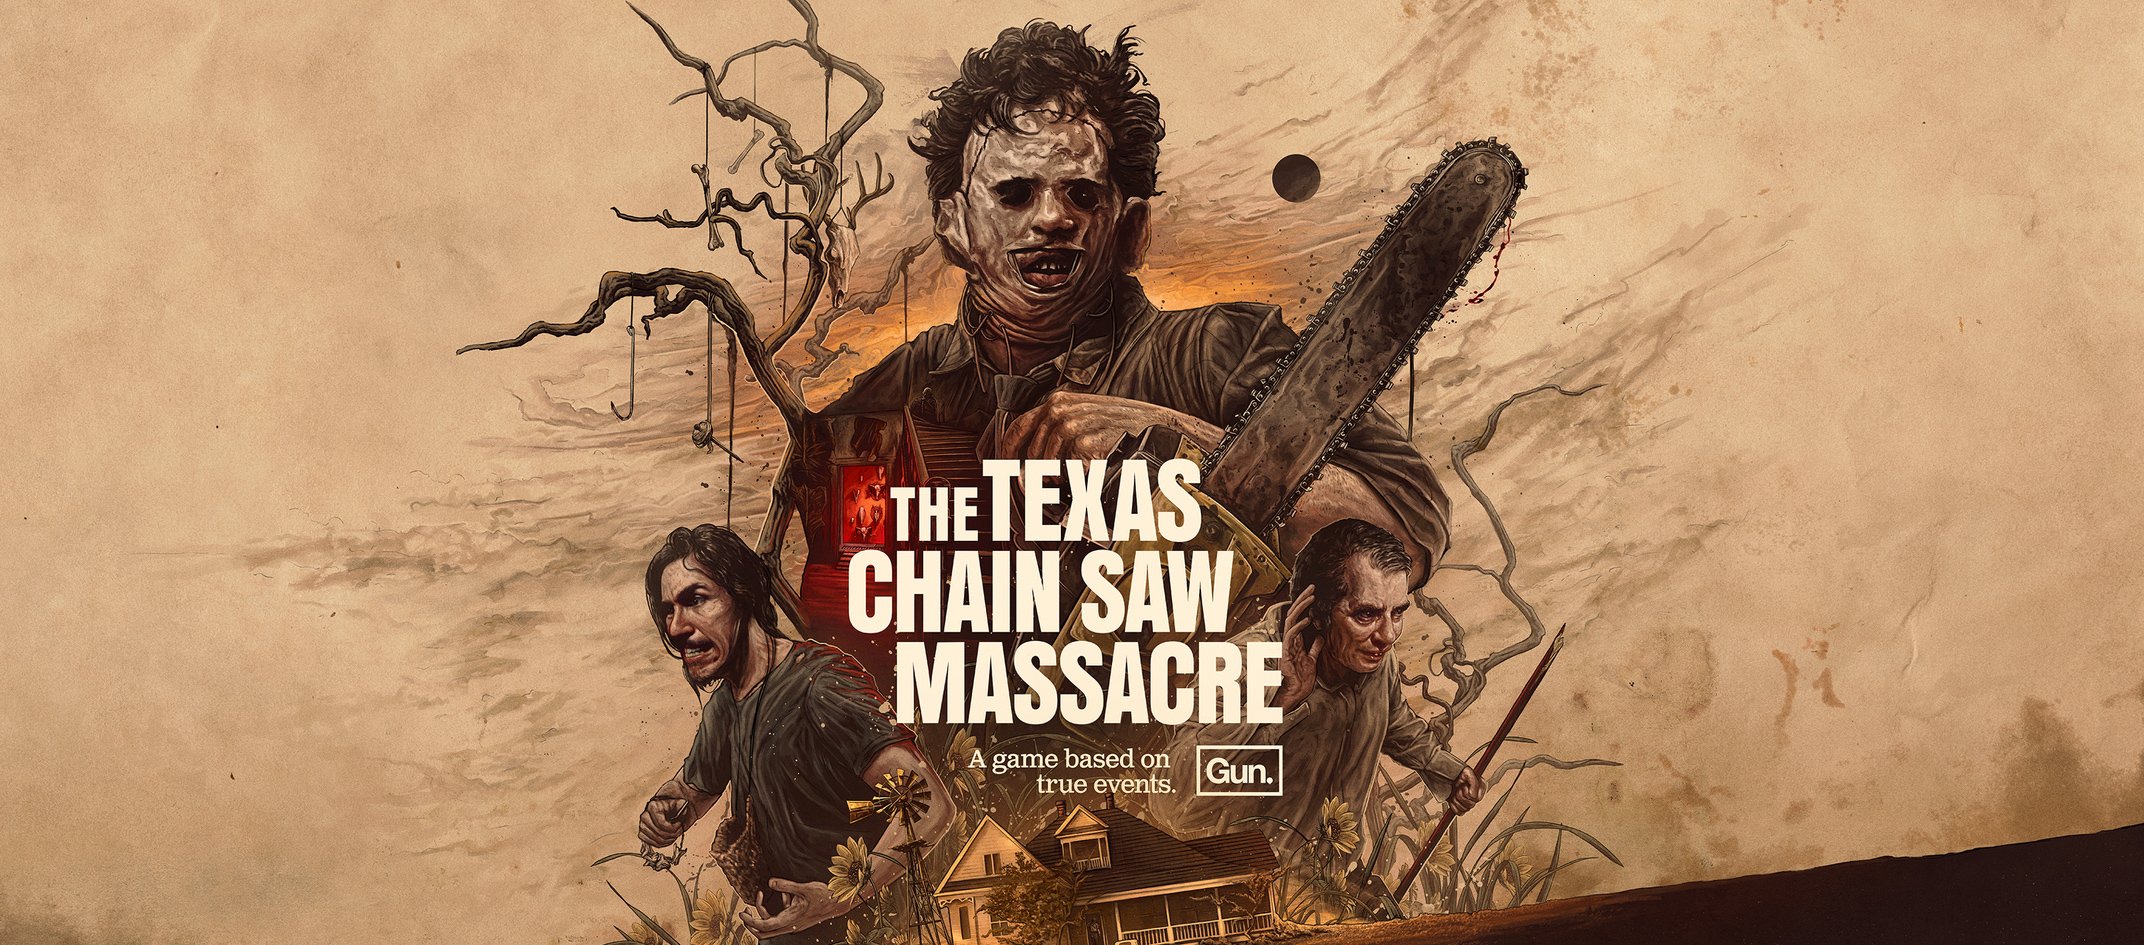 The_Texas_Chain_Saw_Massacre_Splash_Page_AB.jpg